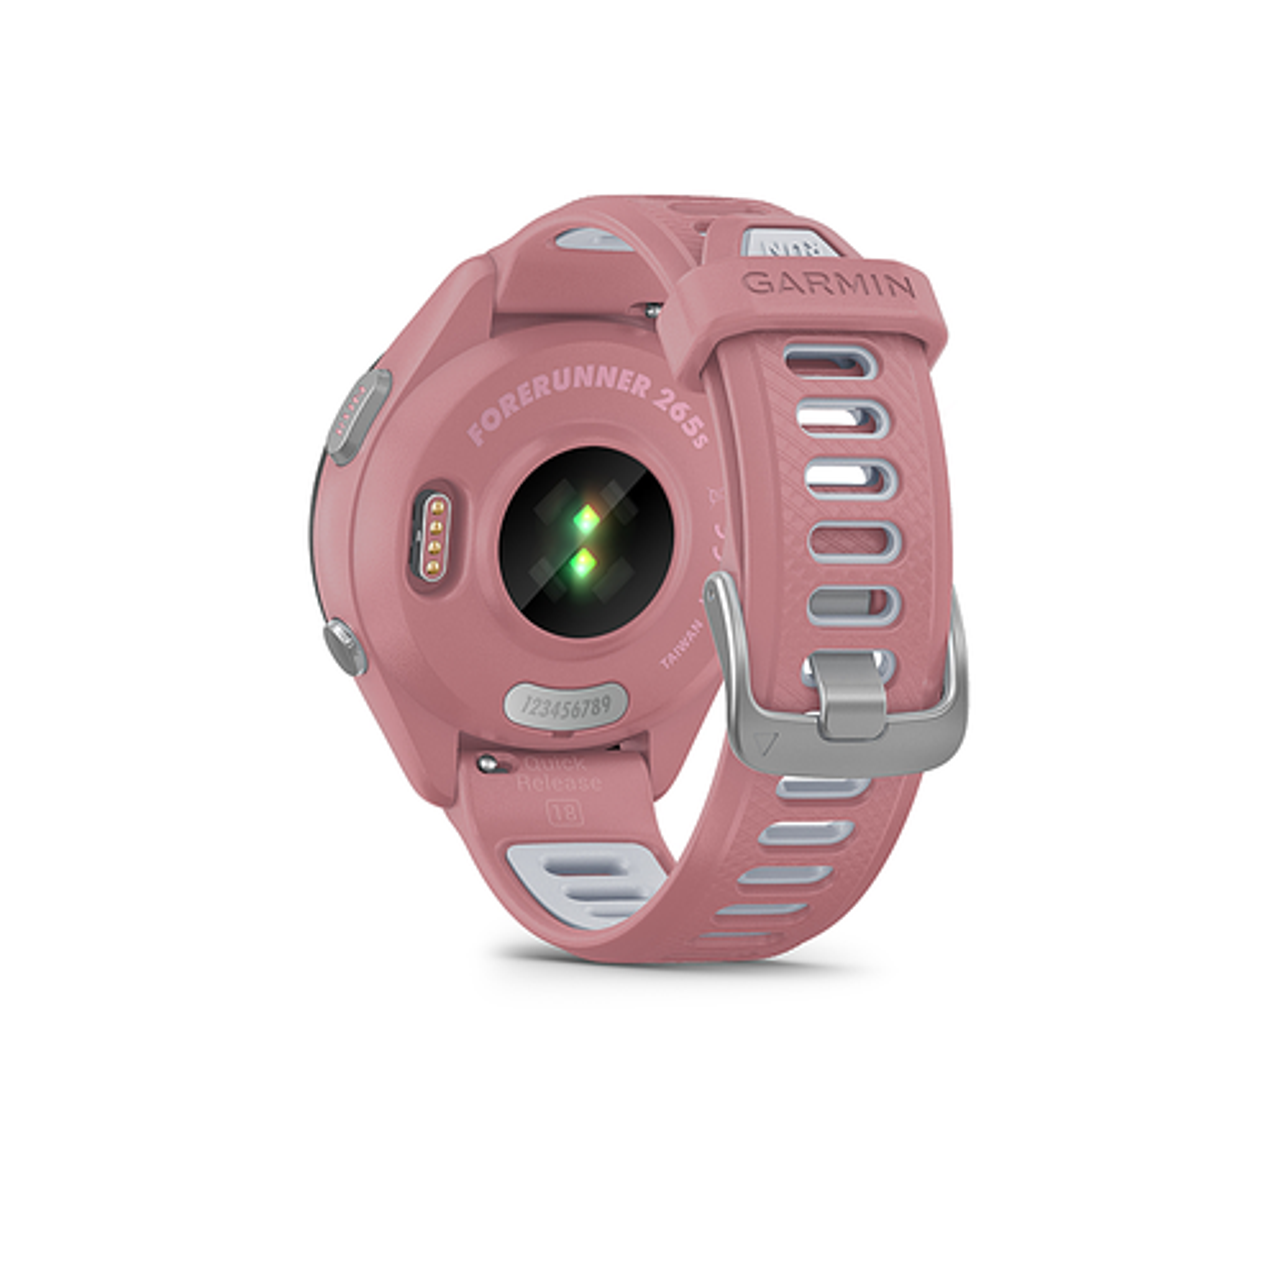 Garmin - Forerunner 265S GPS Smartwatch 42 mm Fiber-reinforced polymer - Black/Light Pink